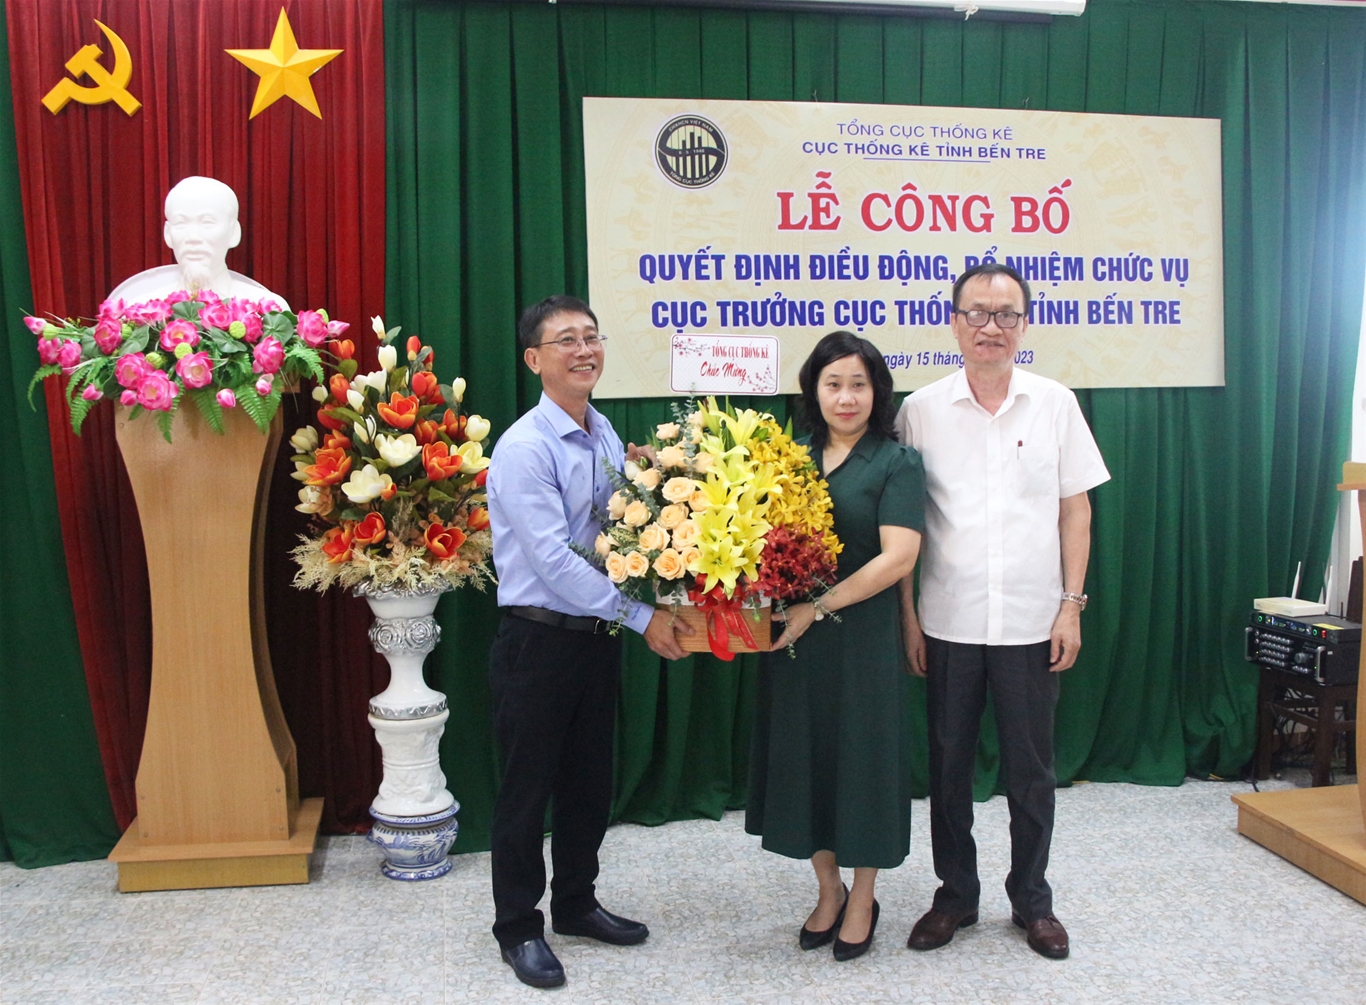 Tổng cục trưởng Tổng cục Thống kê trao quyết định điều động, bổ nhiệm Cục trưởng Cục Thống kê tỉnh Bến Tre đối với ông Võ Thanh Sang